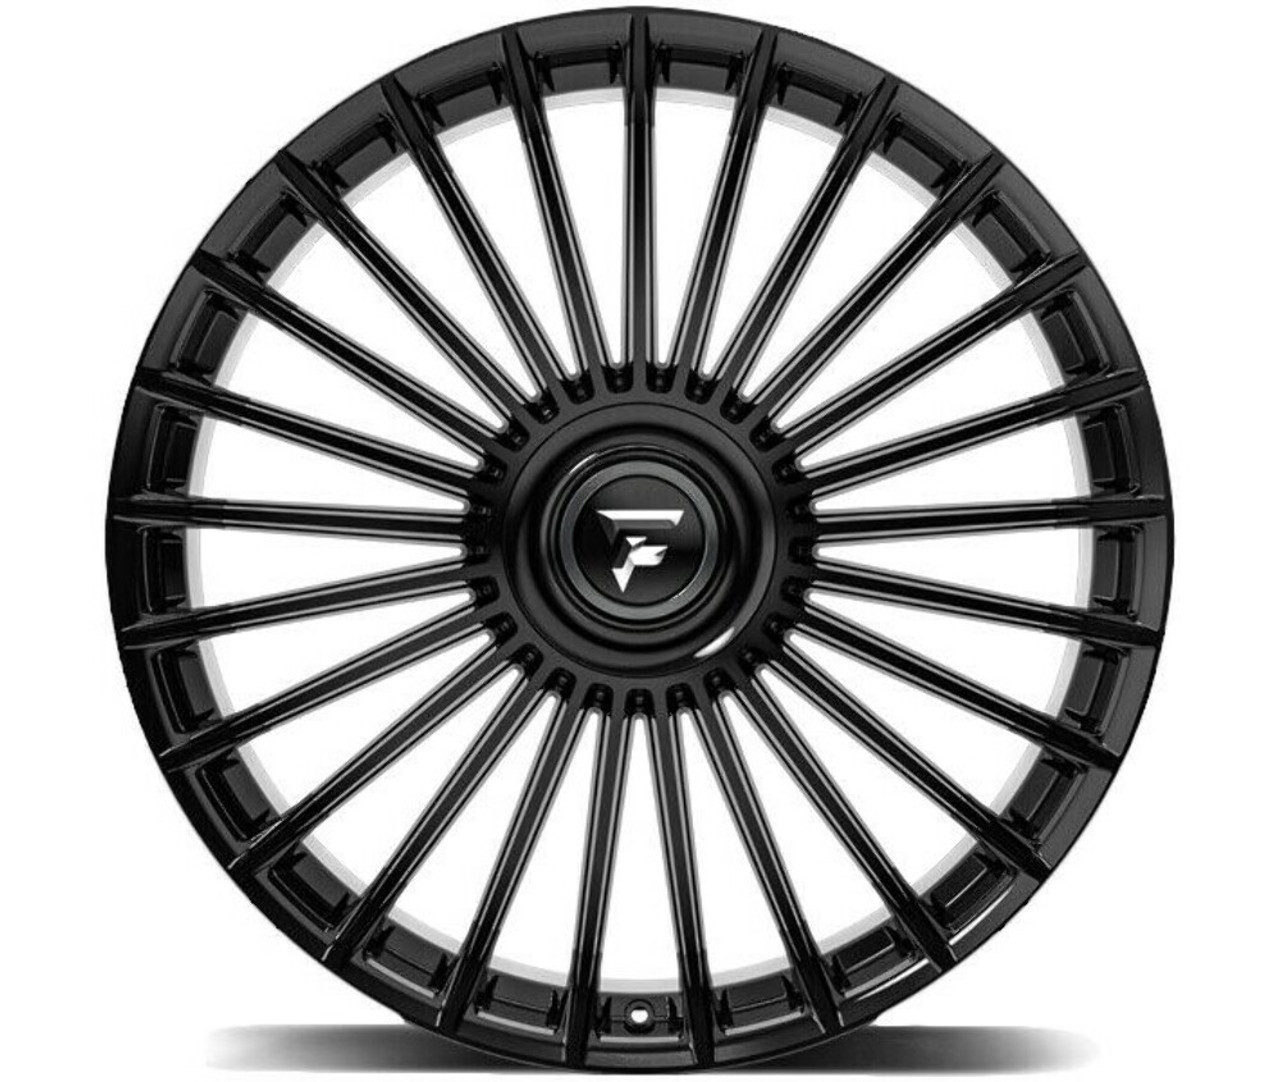 22" Fittipaldi Street FS370B Gloss Black 22x9.5 Wheel 5x108 5x4.5 38mm Rim